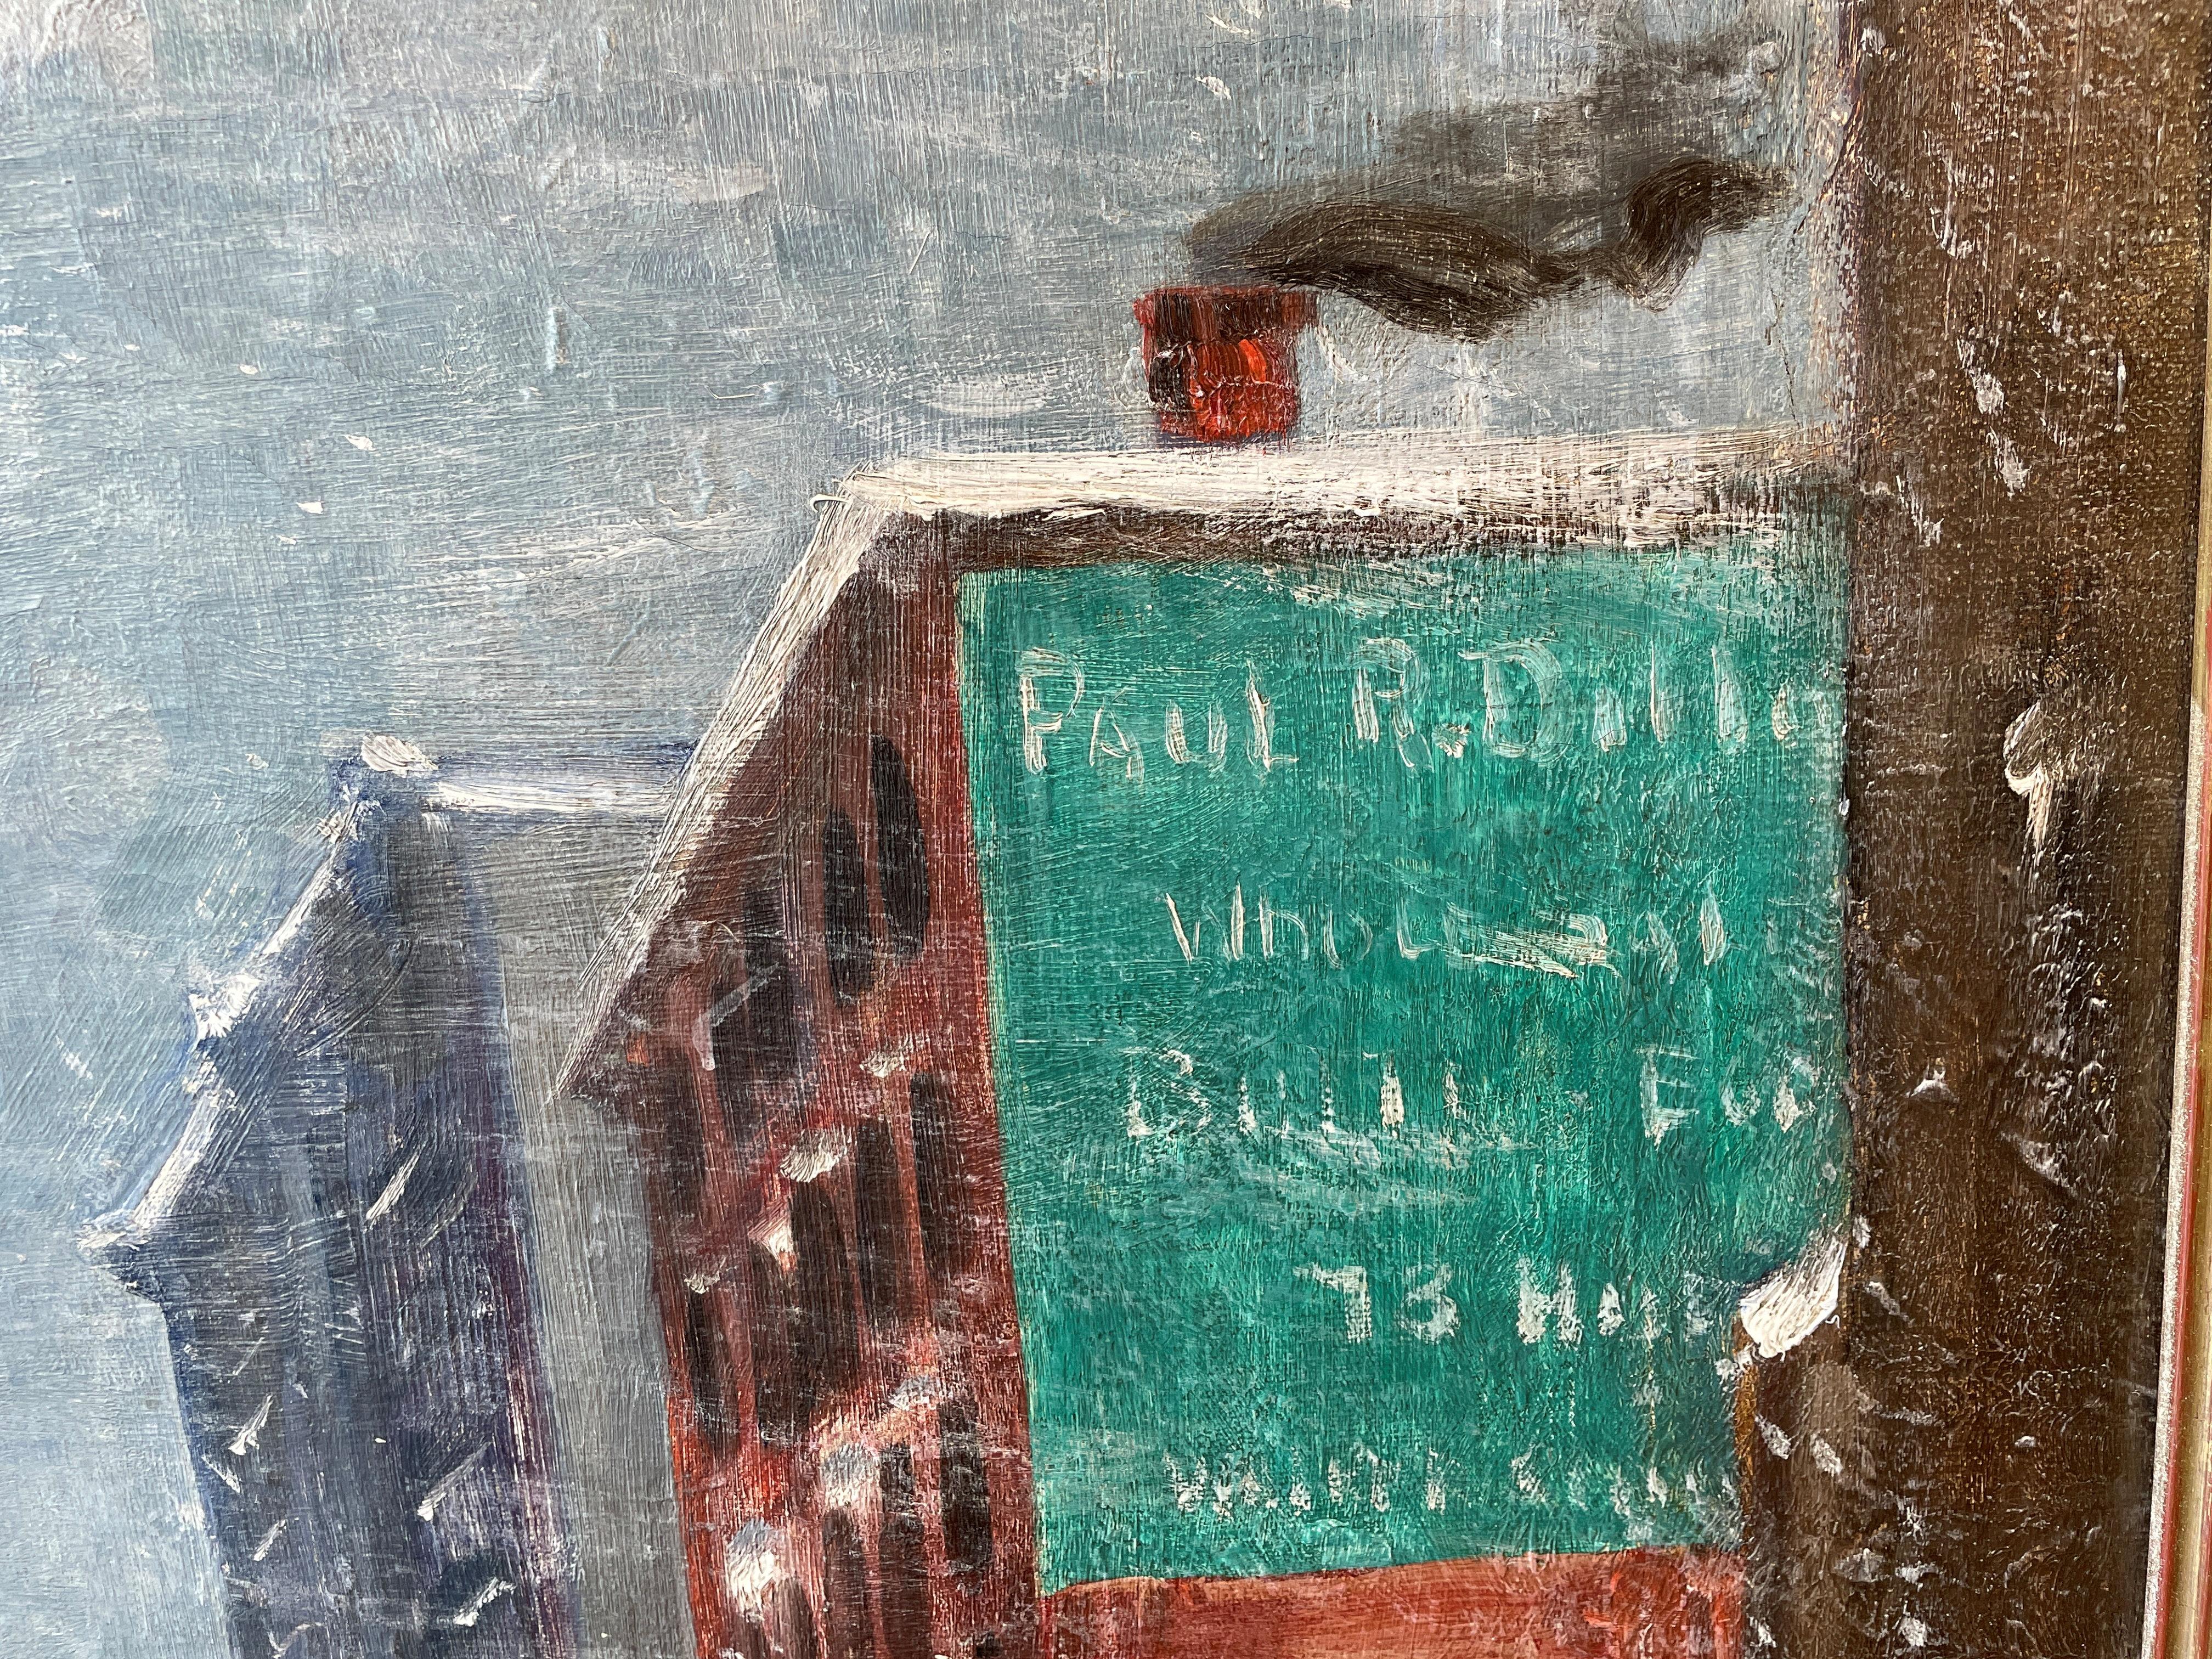 Guy C. Wiggins (1883 - 1962)
Hudson Street, 1935
Huile sur toile
30 x 40 pouces
Signé en bas à gauche

Provenance :
Grand Central Art Galleries, New York
Collection privée, Nebraska
Par descente

Lorsque l'on pense à New York en hiver, il est